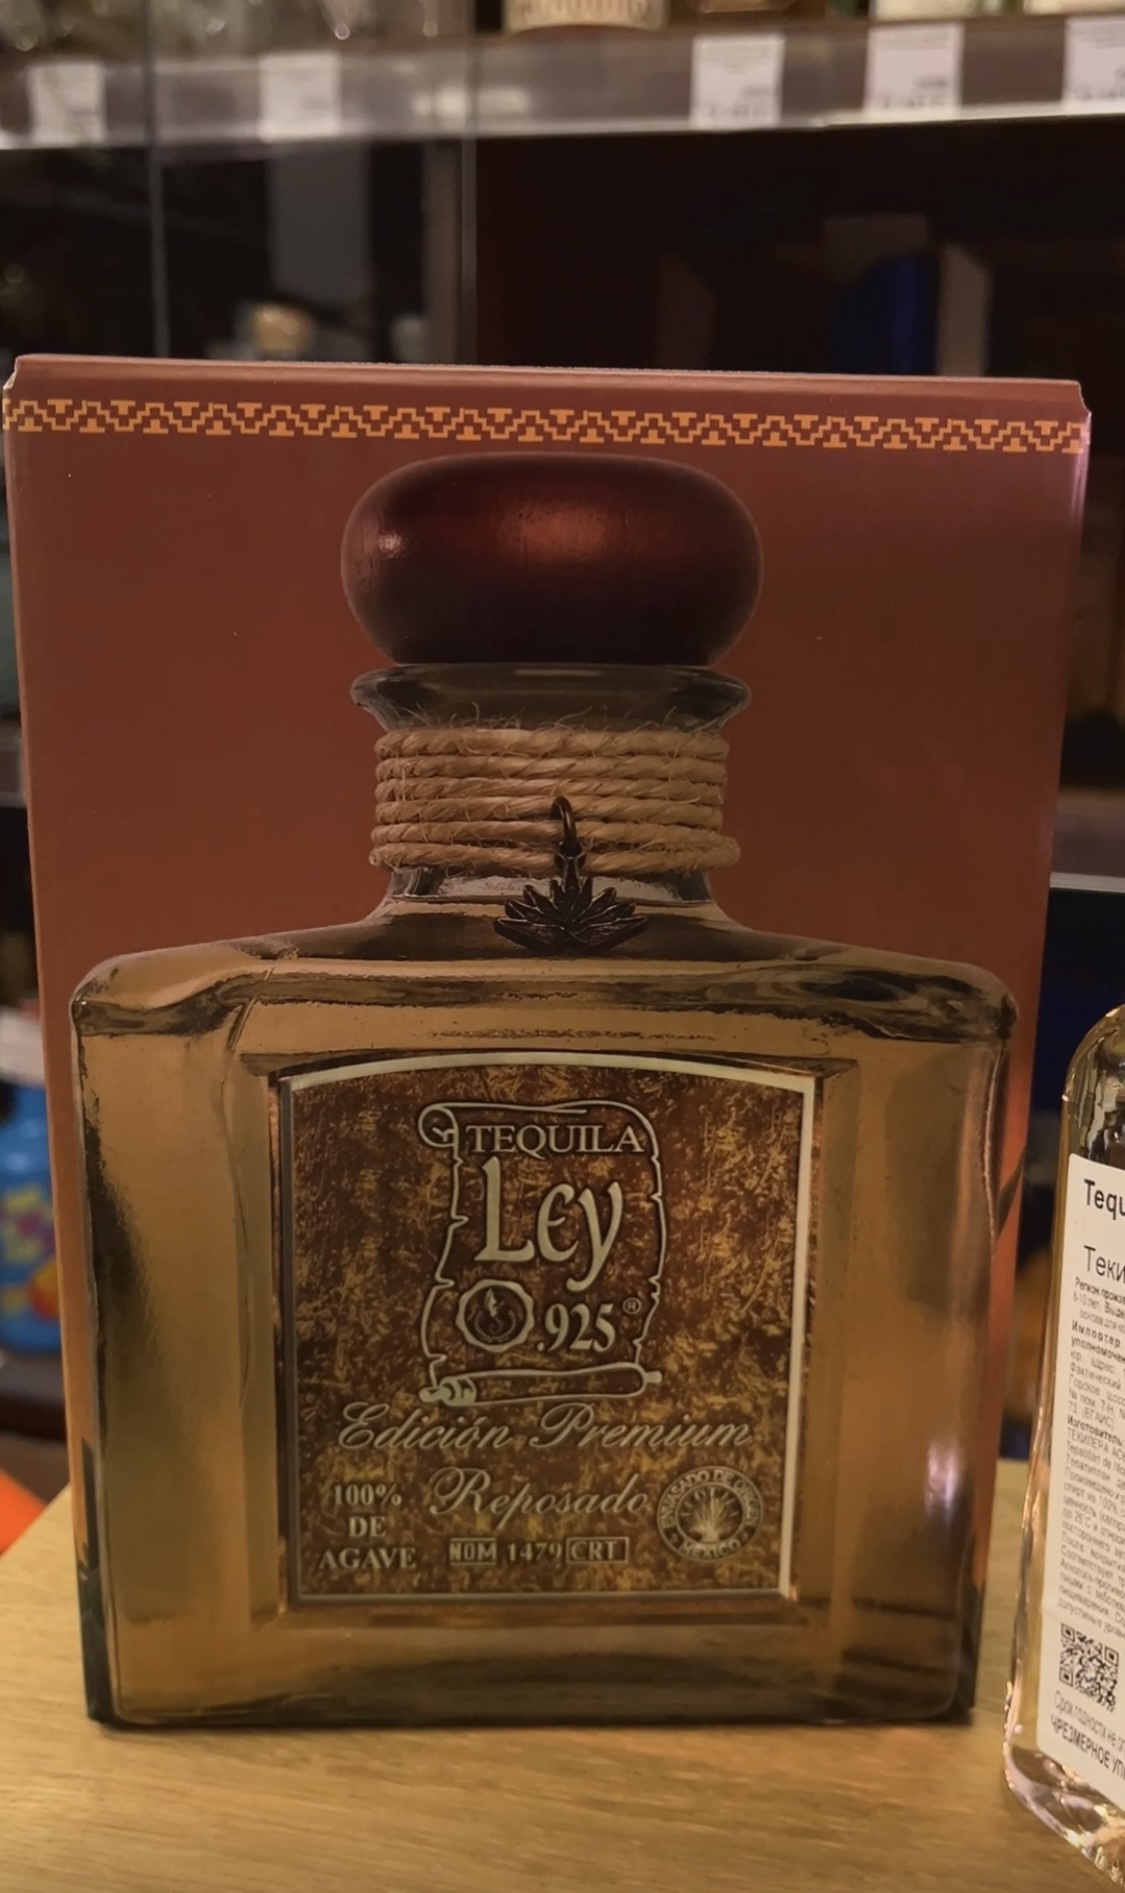 Tequila Ley 925 Reposado Текила Лей 925 Репосадо 0.75л в подарочной упаковке